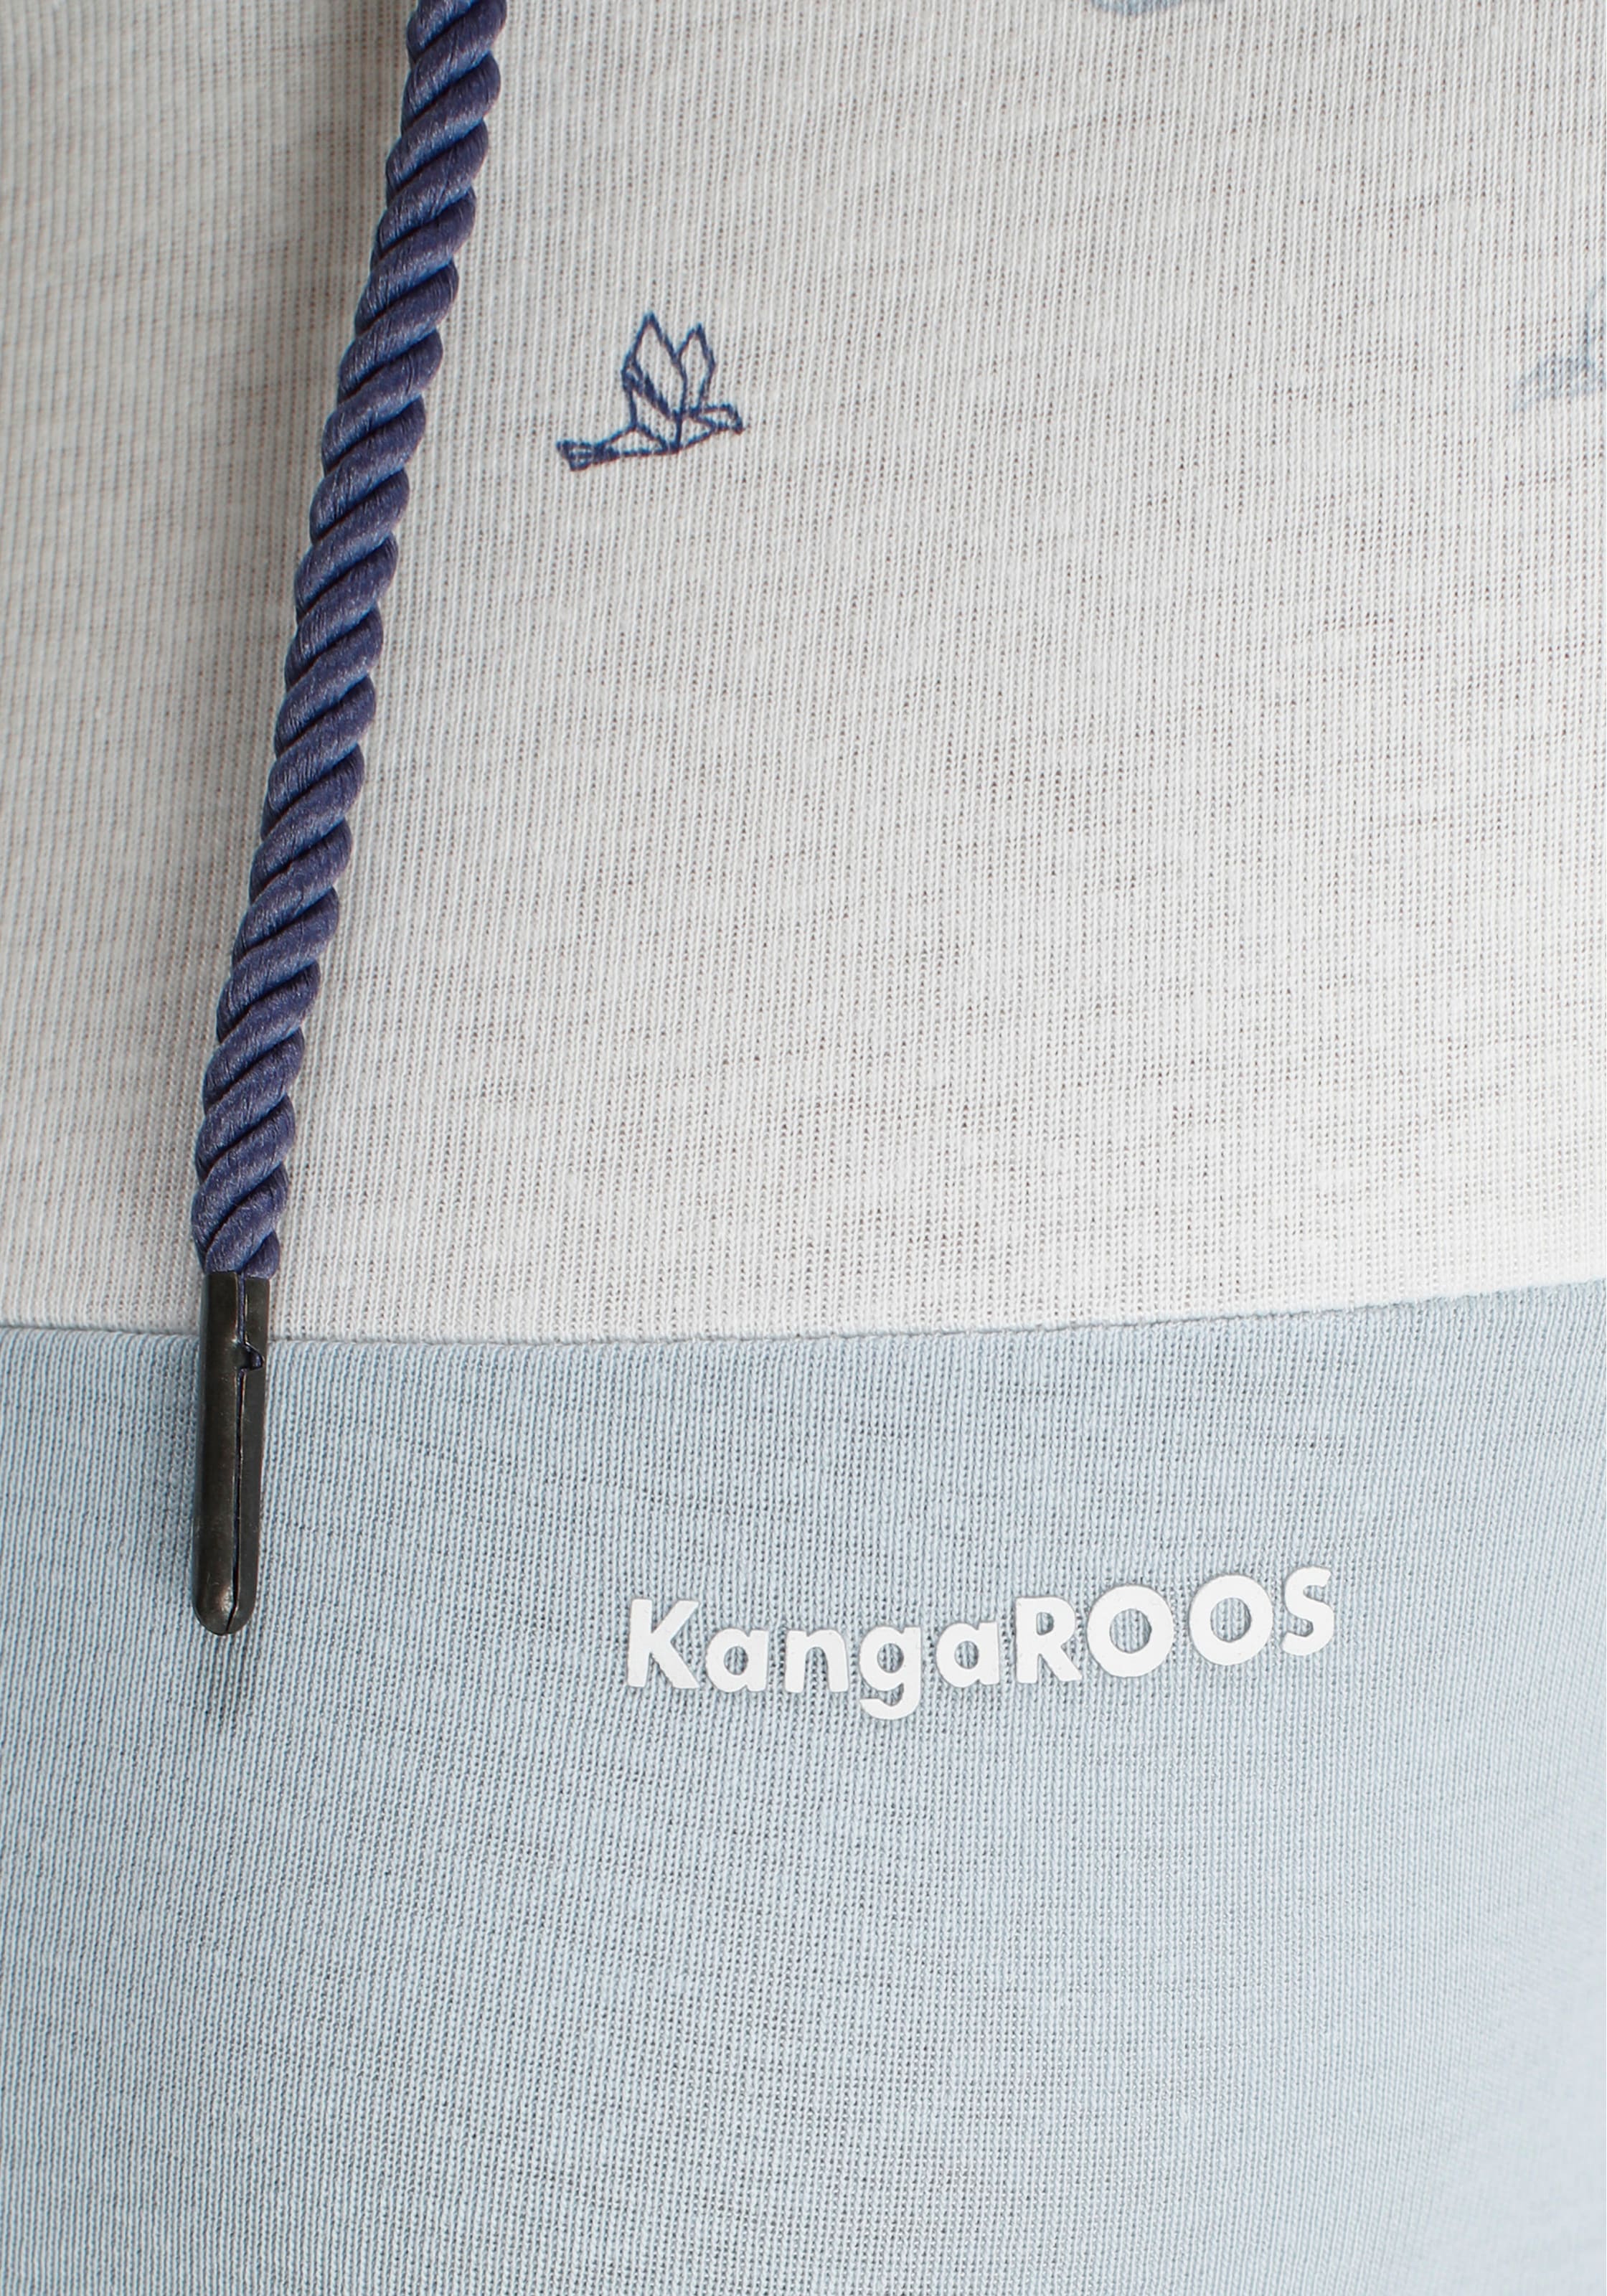 KangaROOS Kapuzenshirt, im trendigen Colorblocking-Design